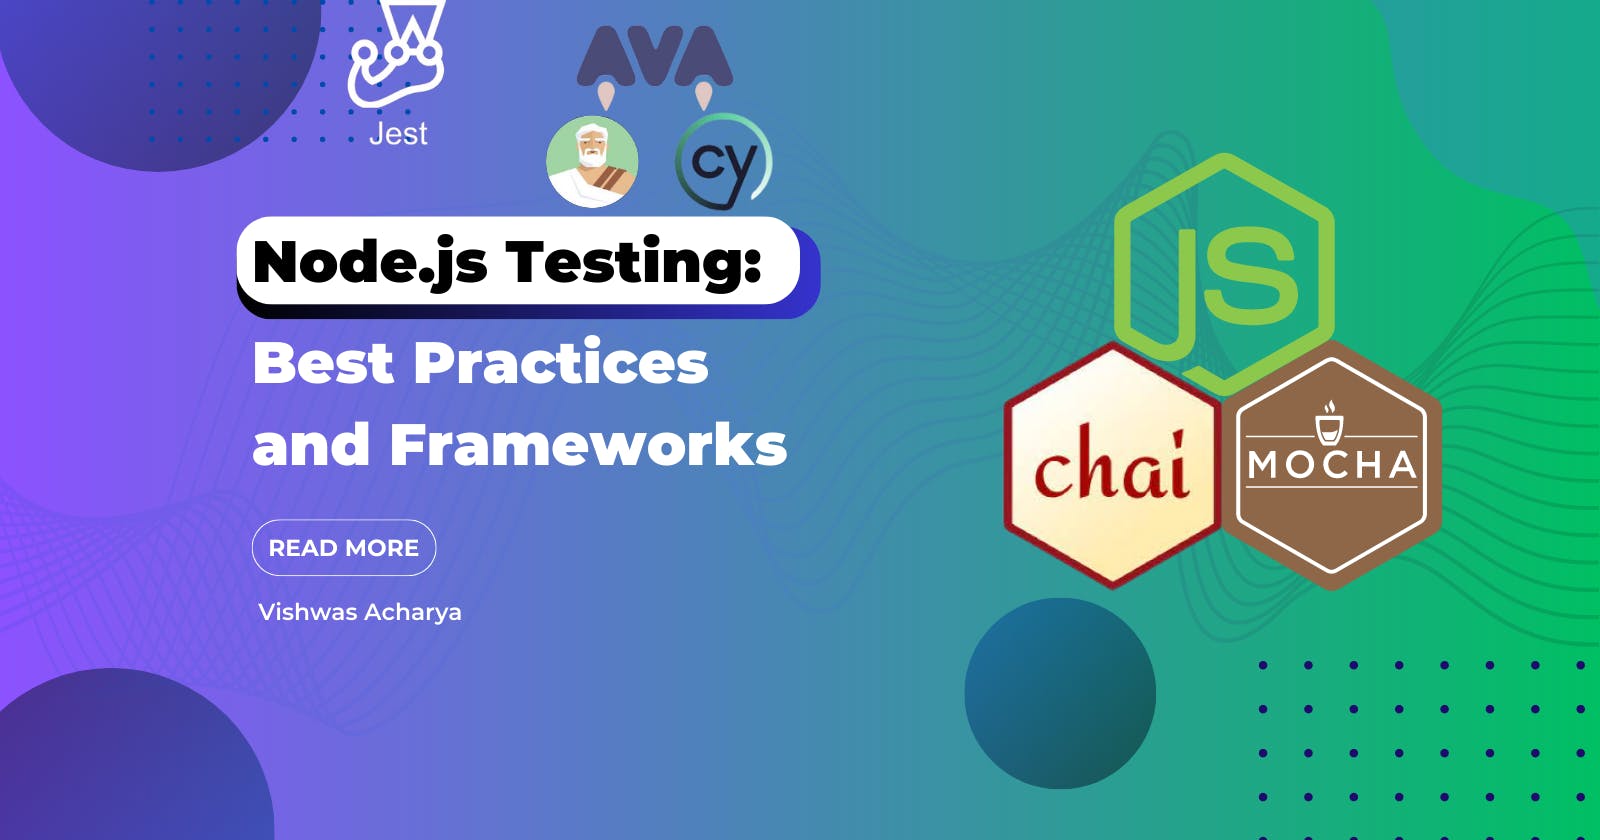 Node.js Testing: Best Practices and Frameworks